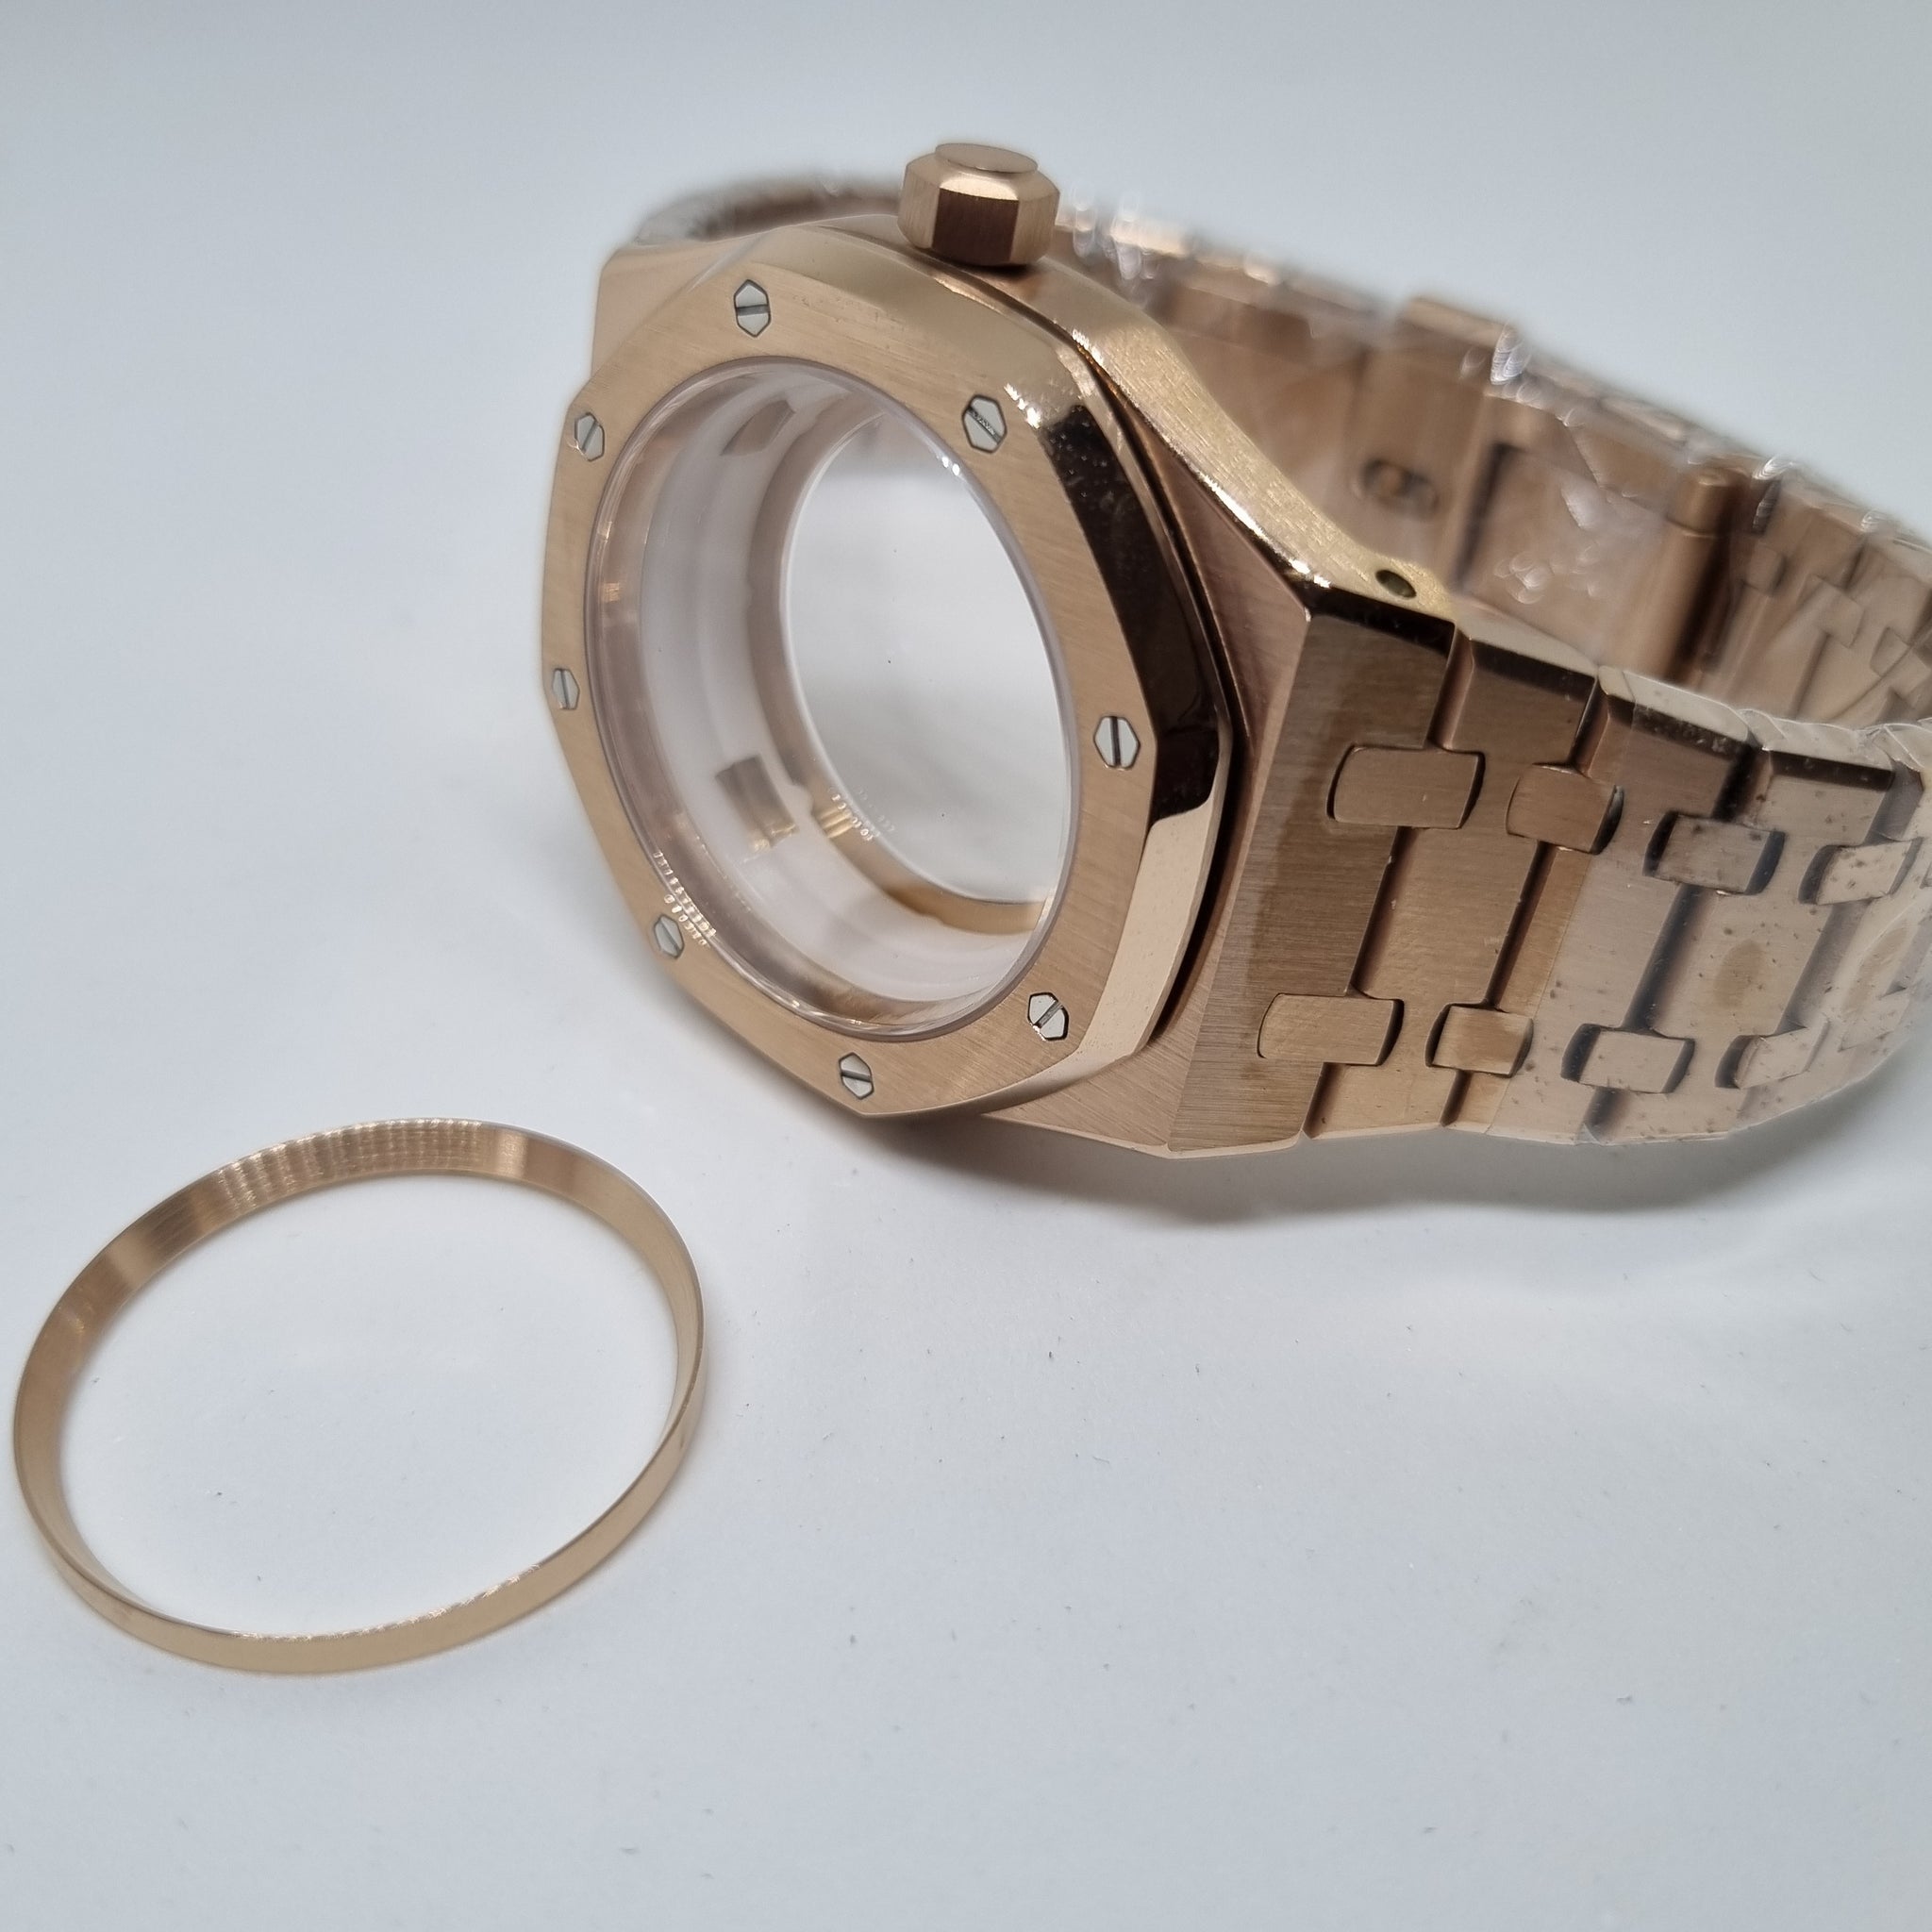 CAS009 APro Case Set with Bracelet  – Mod Mode Watches